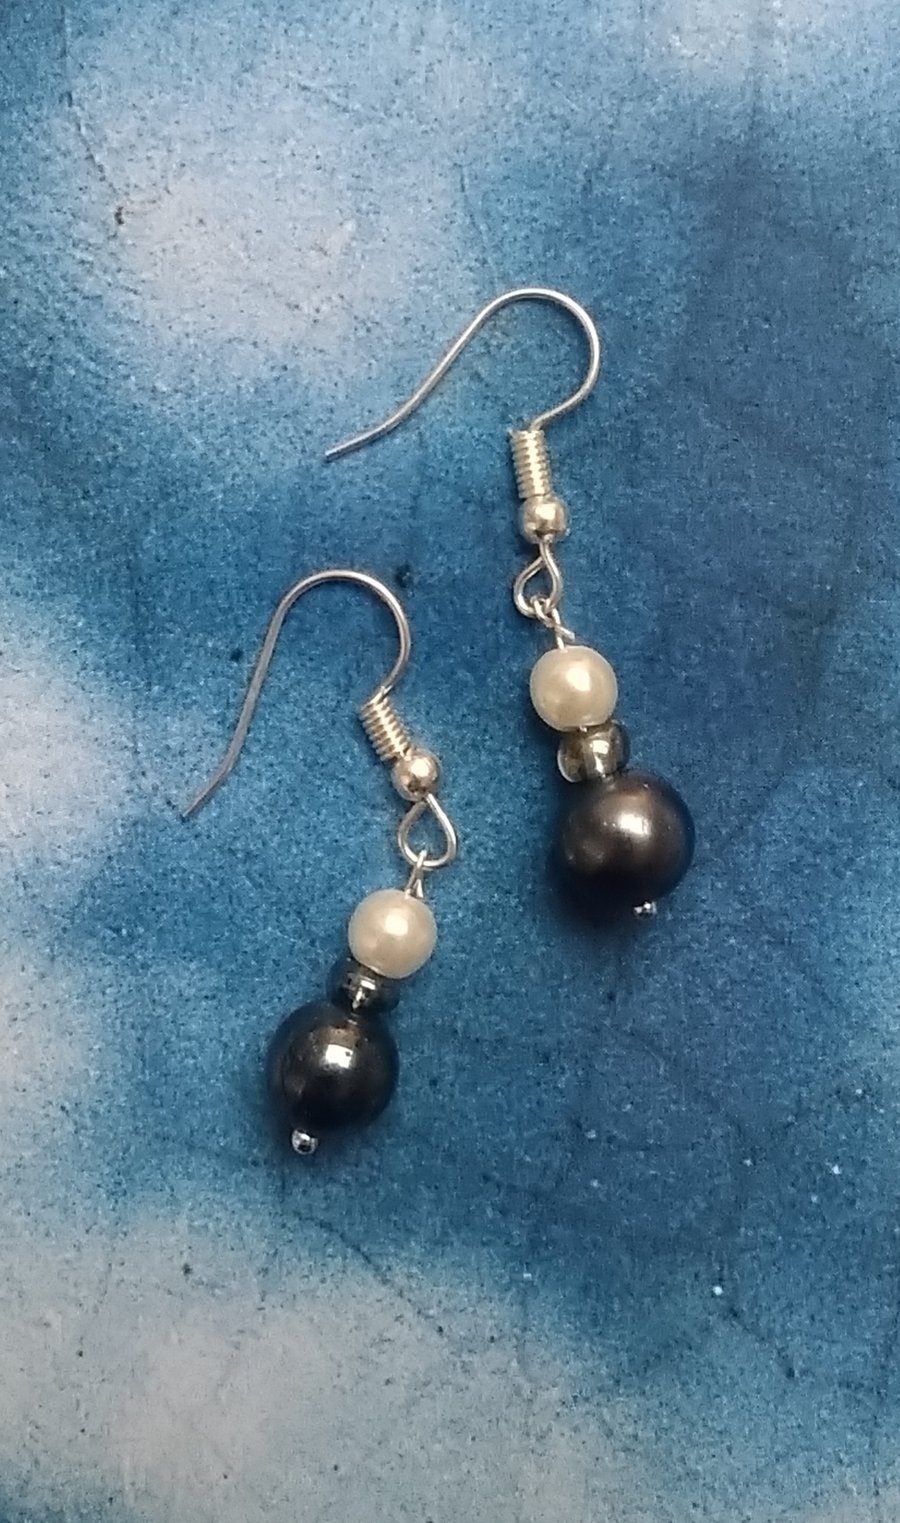 Handmade Drop Earrings with Pearls